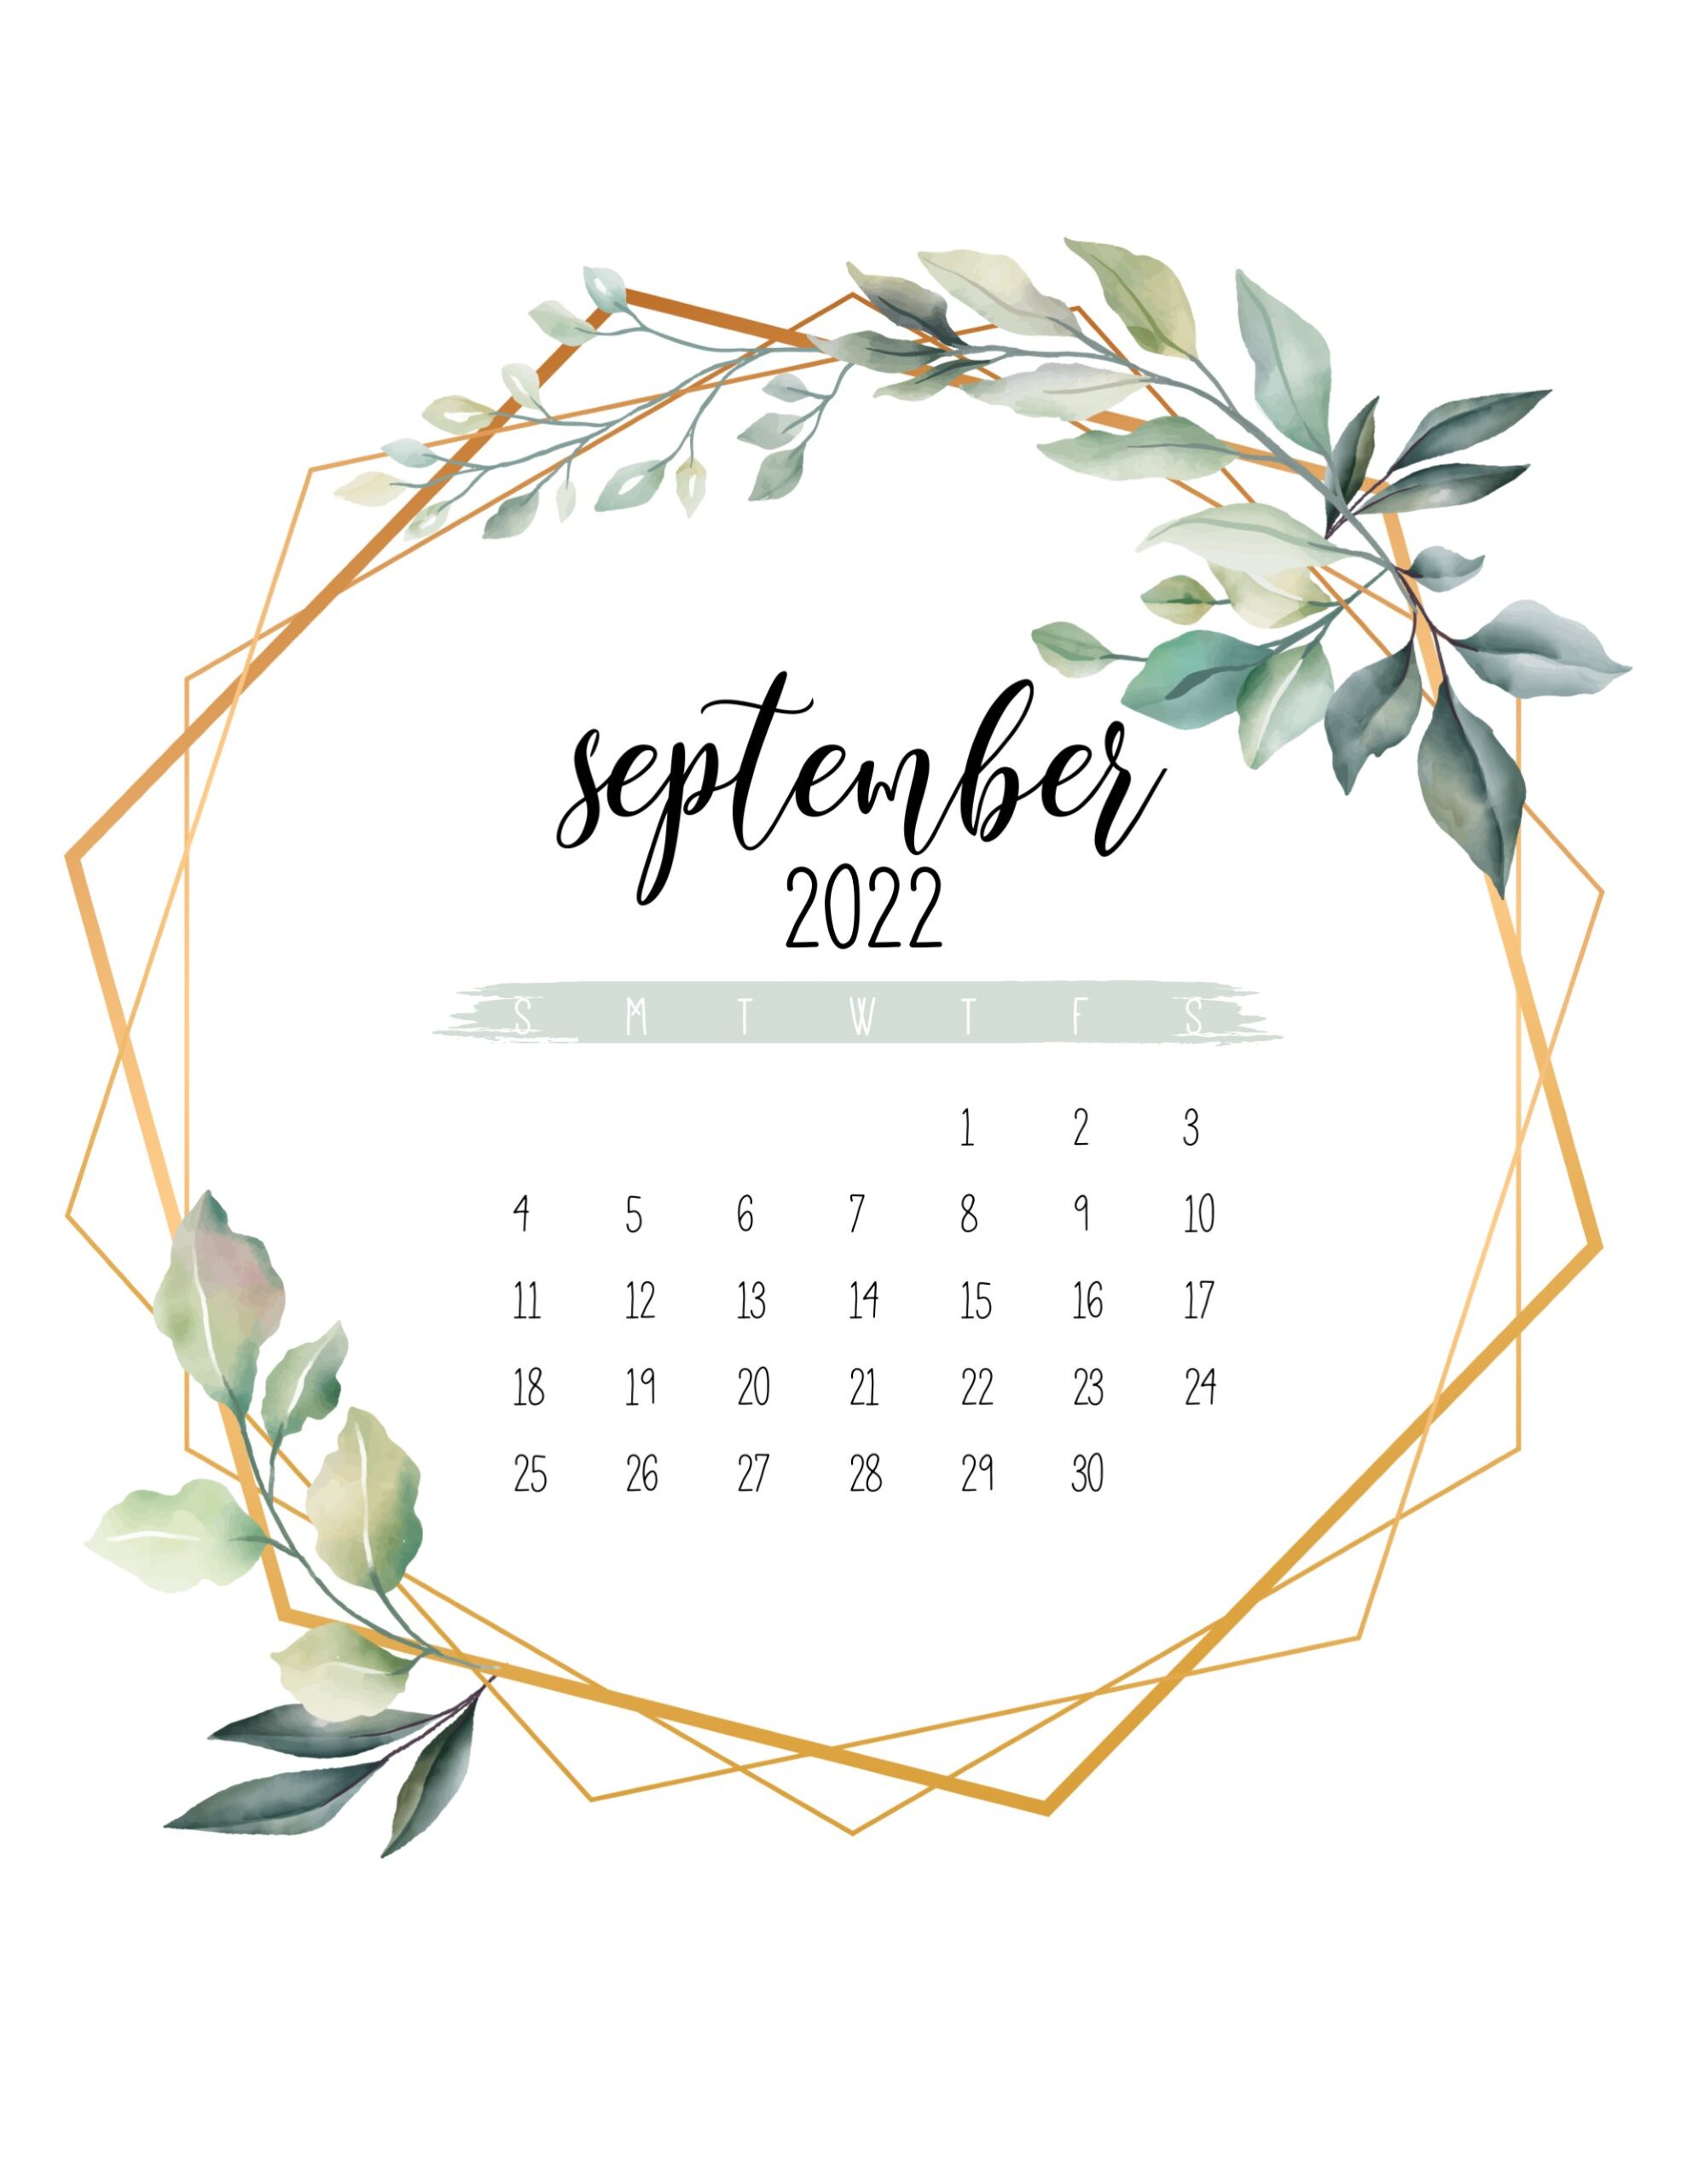 Calendario 2022 jardim botanico setembro